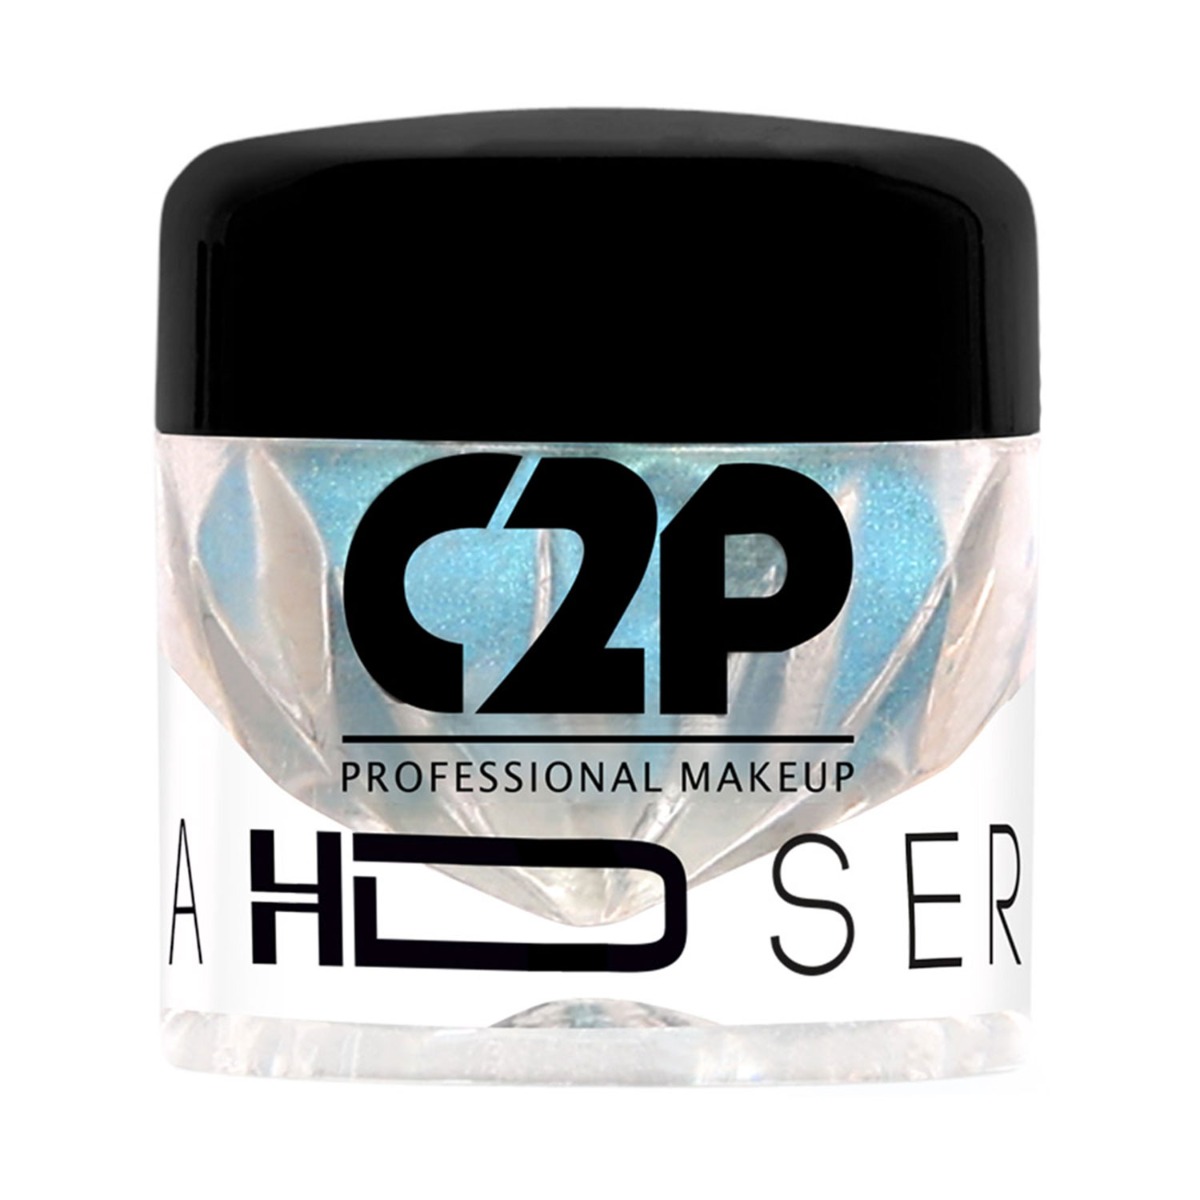 C2P Pro HD Loose Precious Pigments - Aqua Shine 64, 2gm